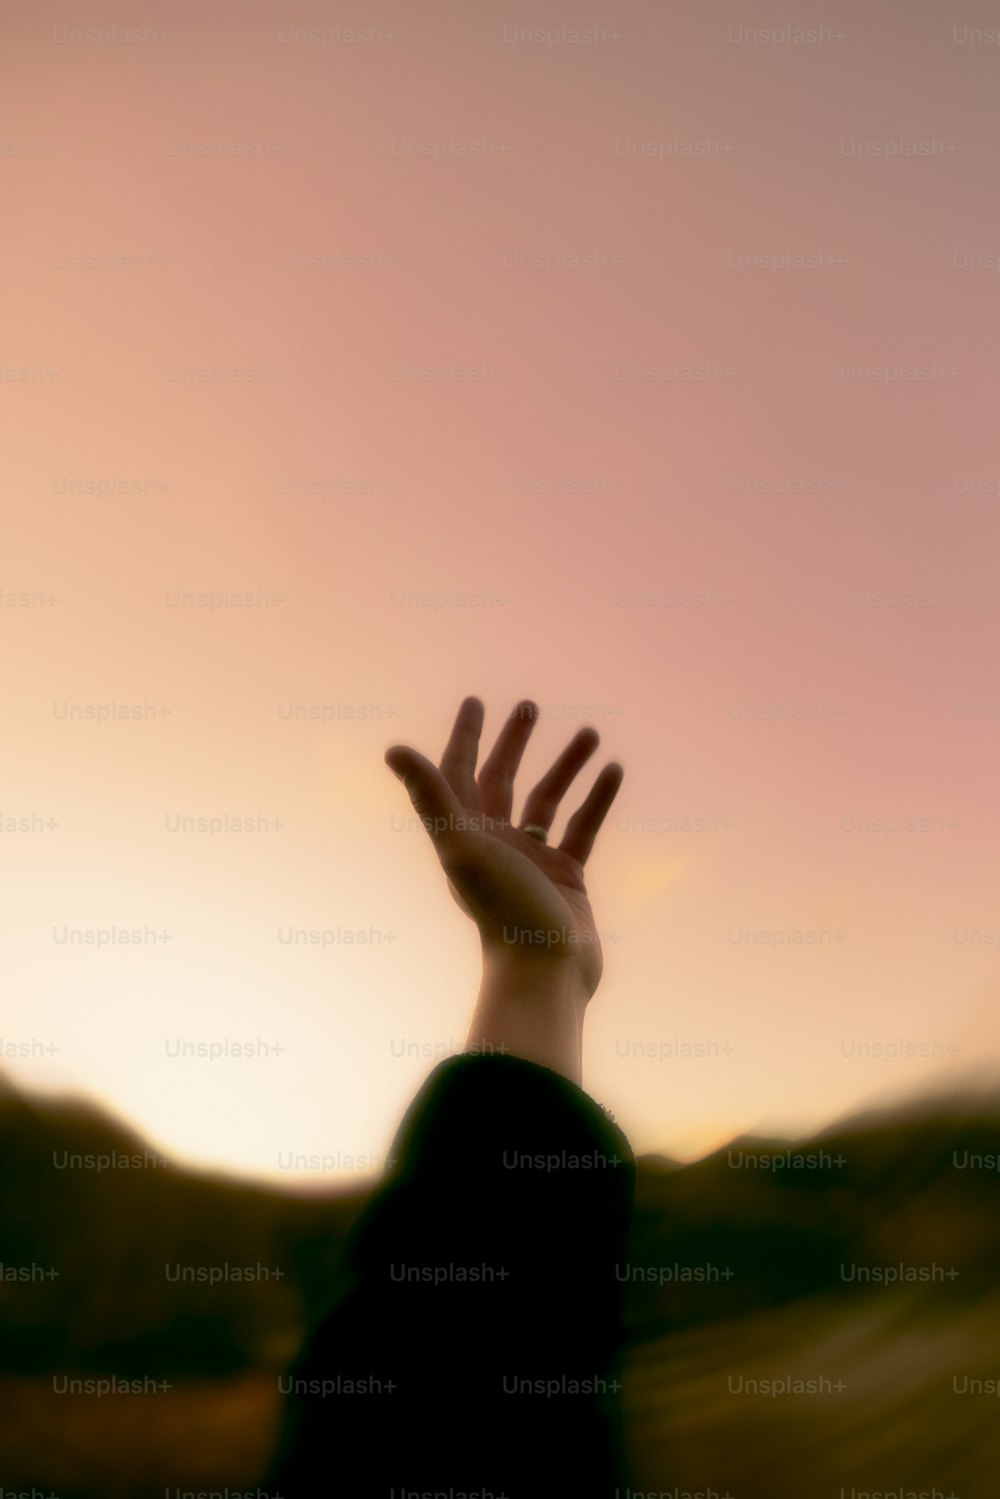 une photo floue d’une main qui s’élève vers le ciel